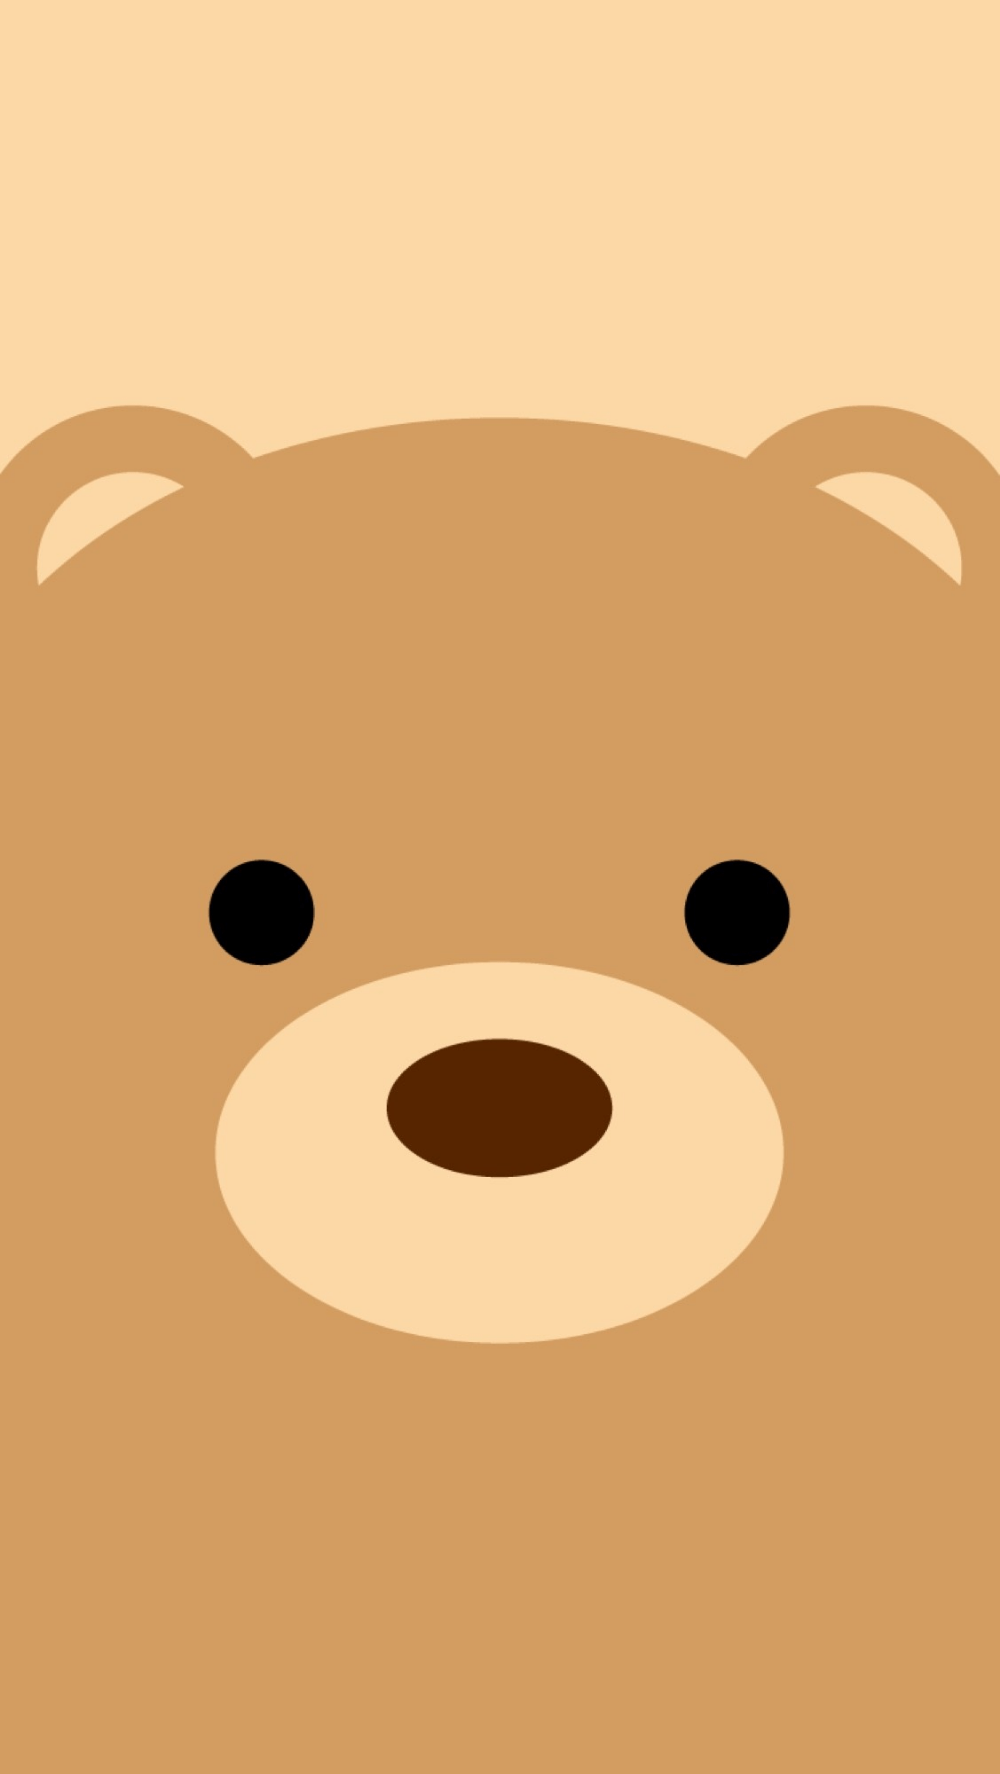 Hình nền gấu dễ thương 1000x1774 cho iPhone - Búsqueda de Google